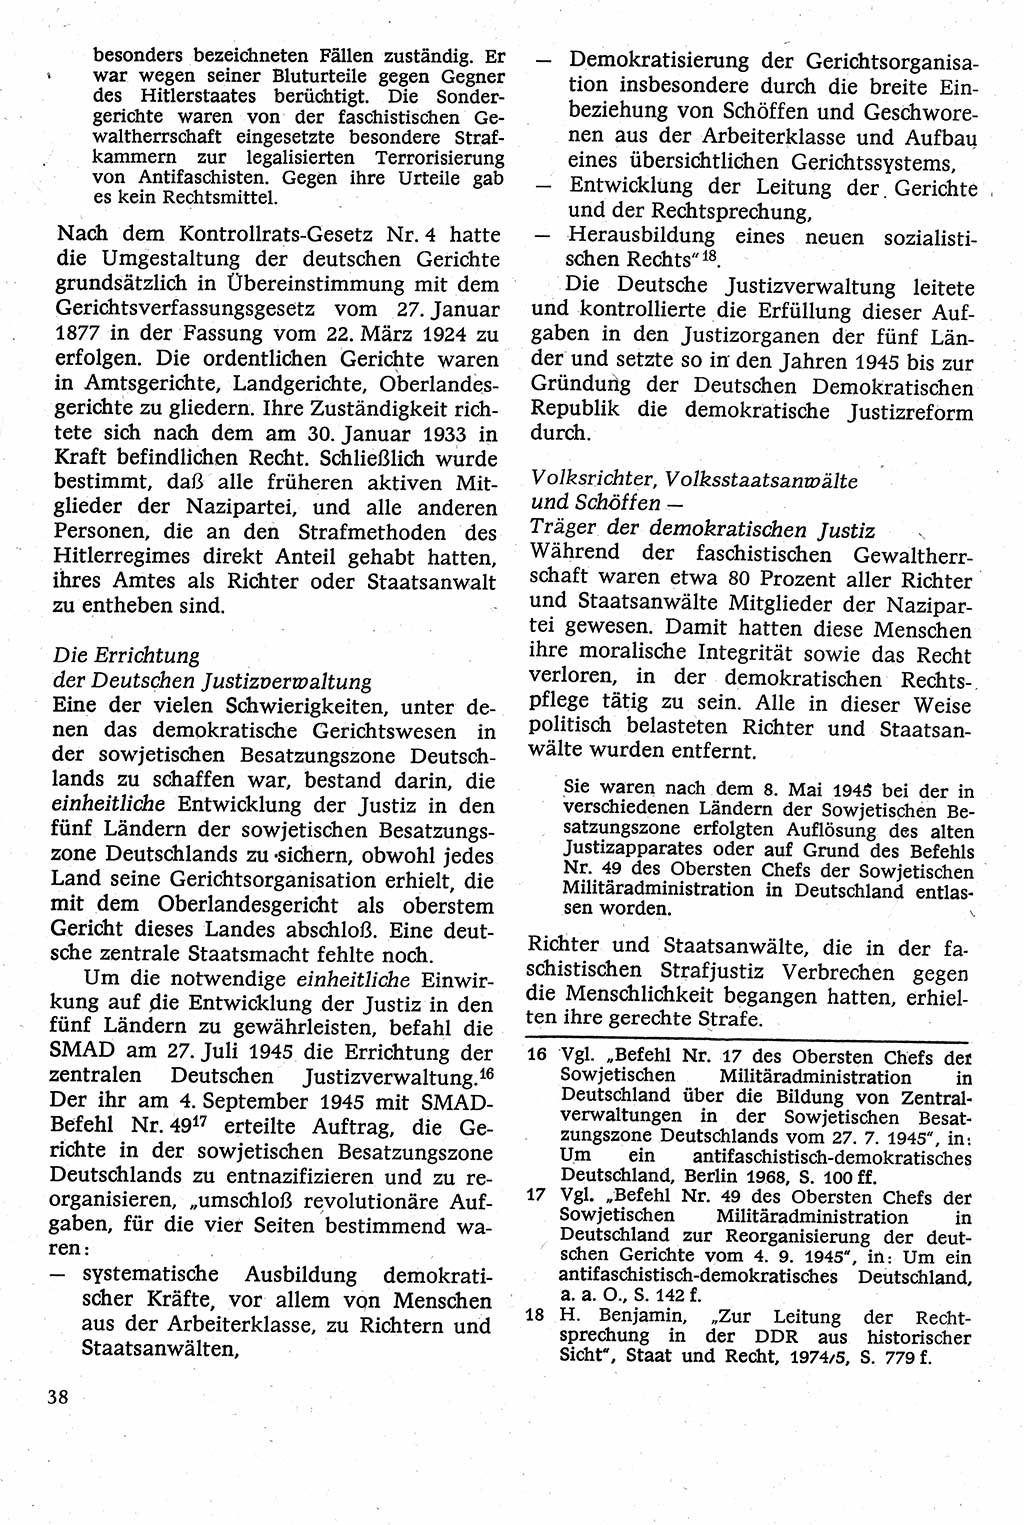 Strafverfahrensrecht [Deutsche Demokratische Republik (DDR)], Lehrbuch 1982, Seite 38 (Strafverf.-R. DDR Lb. 1982, S. 38)